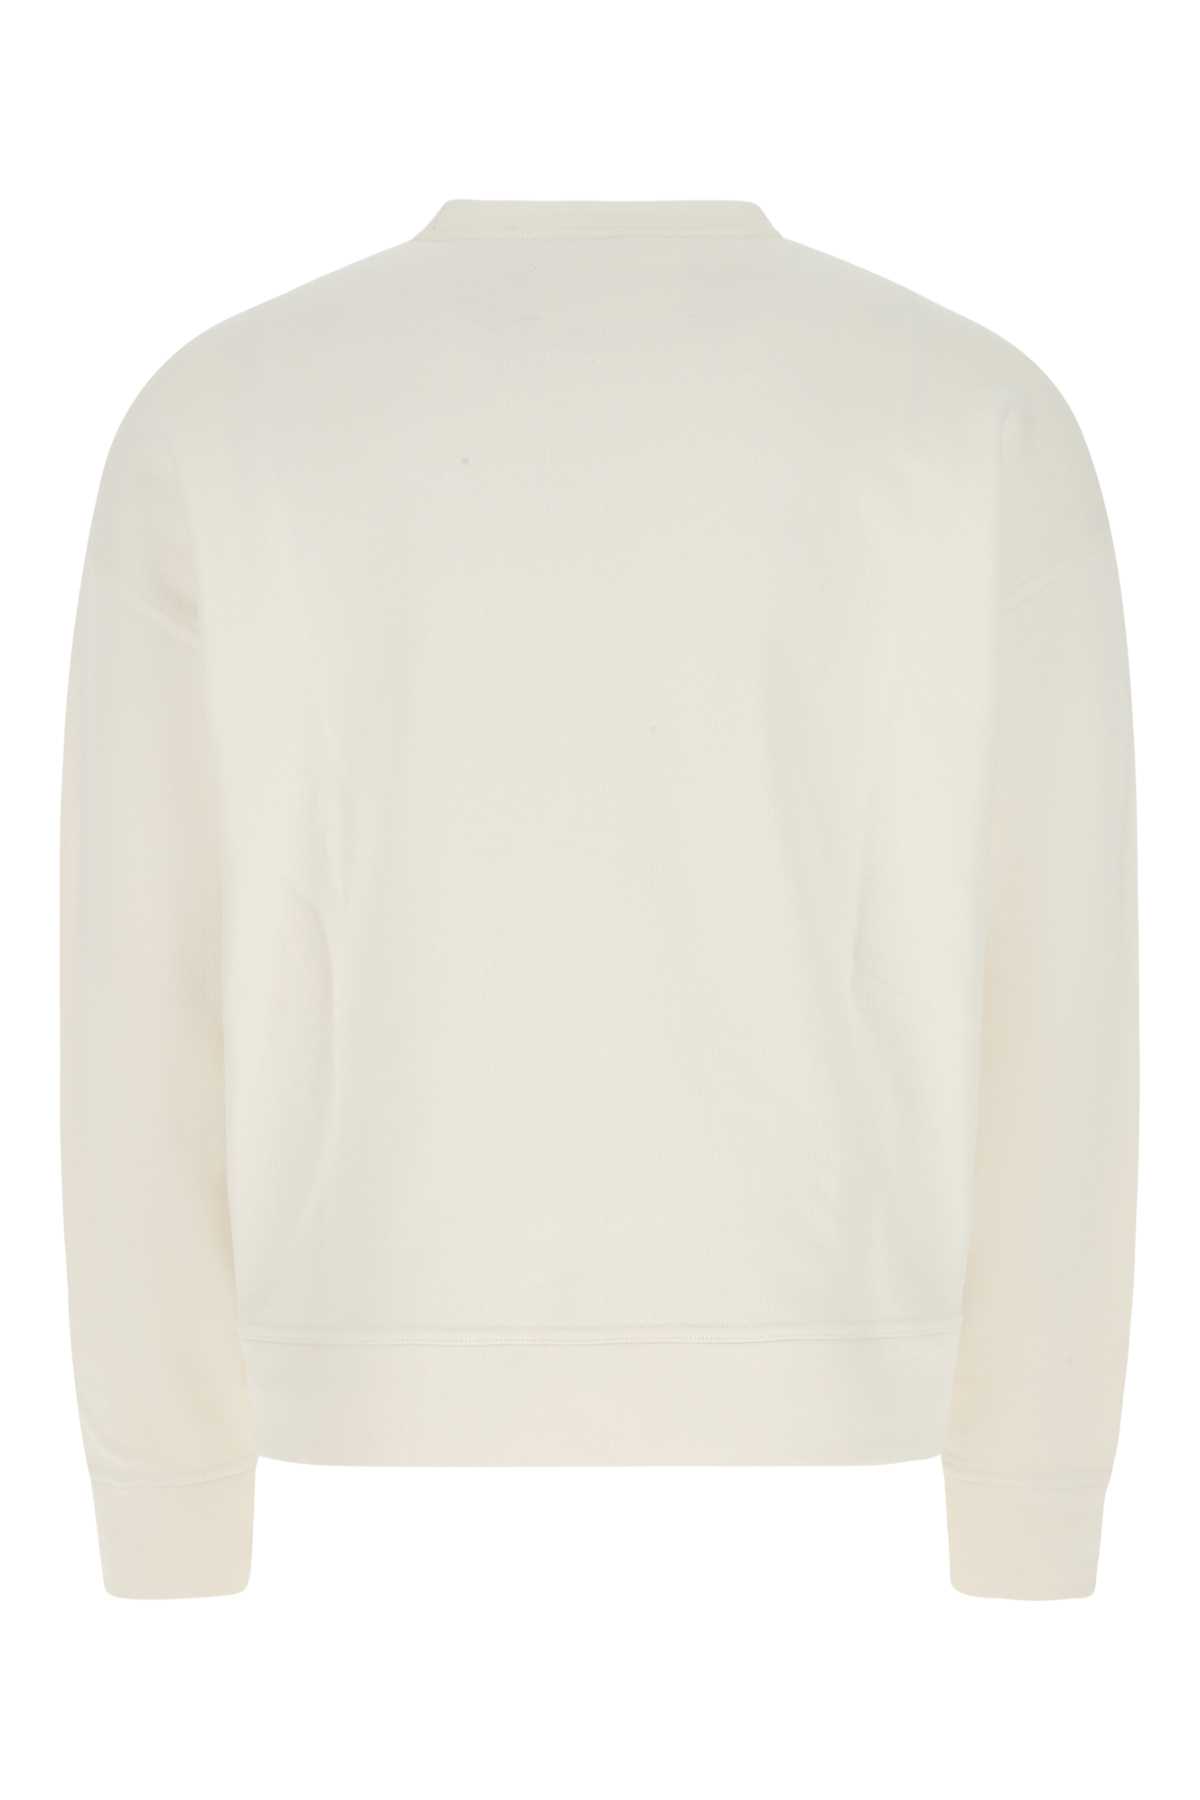 Jil Sander Ivory Cotton Oversize Sweatshirt In 279